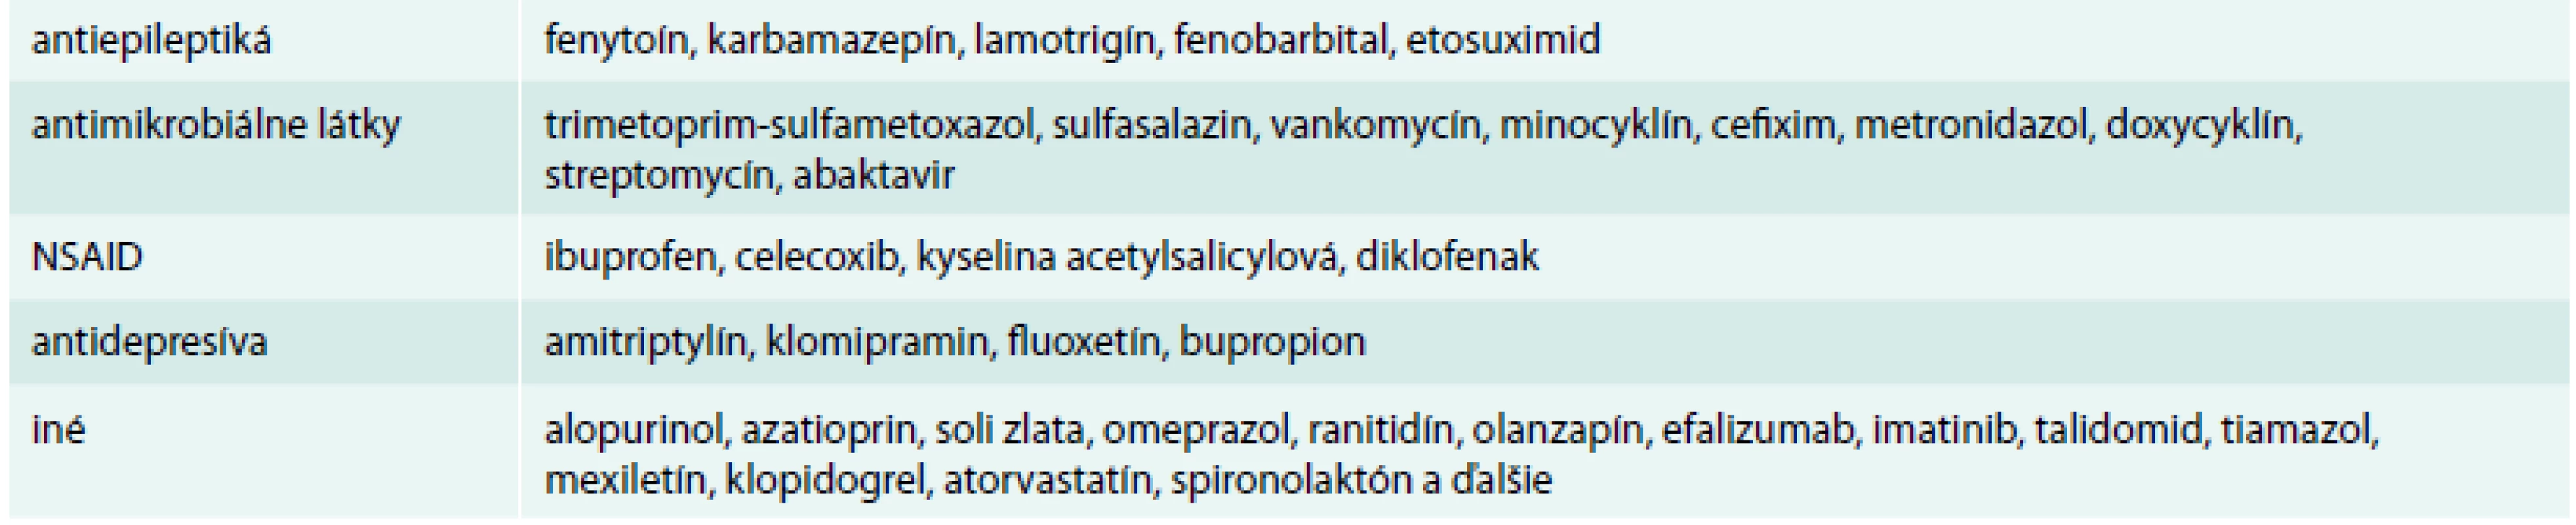 Lieky asociované so vznikom DRESS syndrómu. Upravené podľa [9]